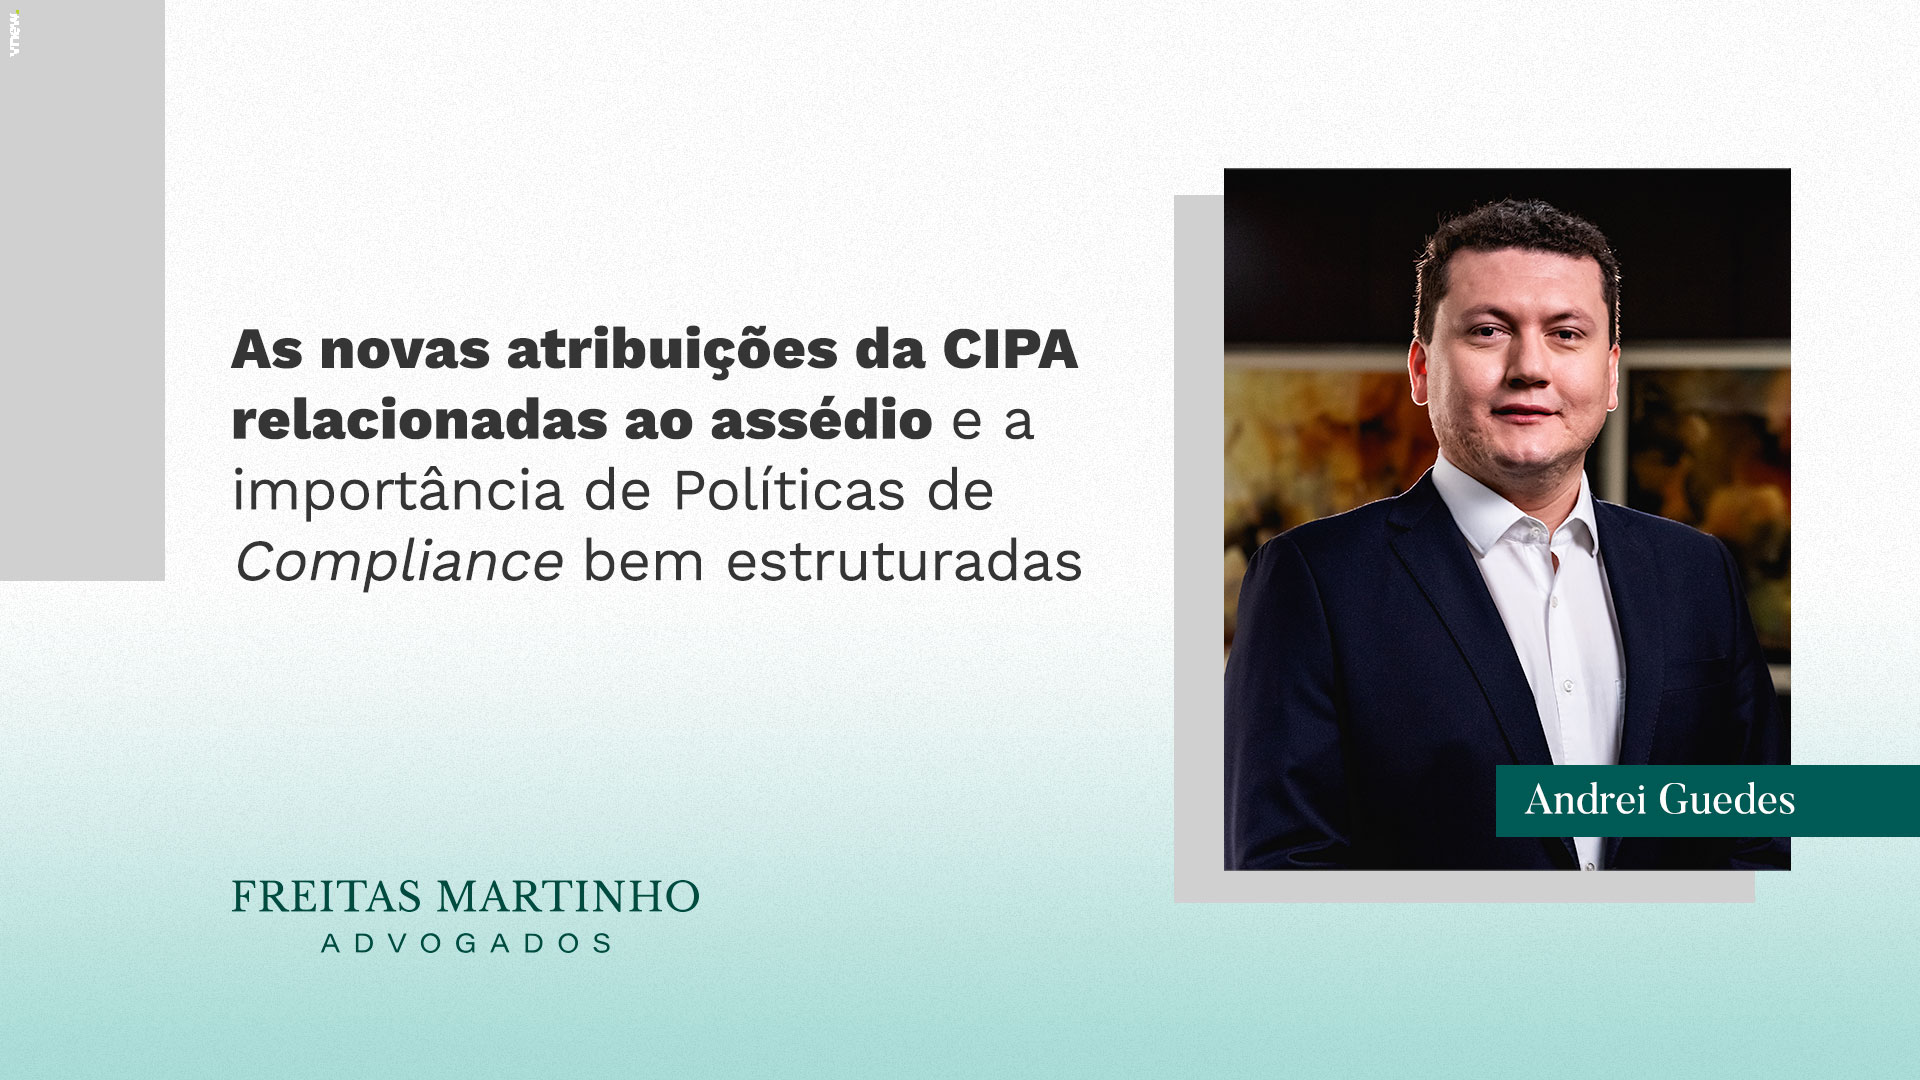 As novas atribuições da CIPA relacionadas ao assédio e a importância de Políticas de Compliance bem estruturadas